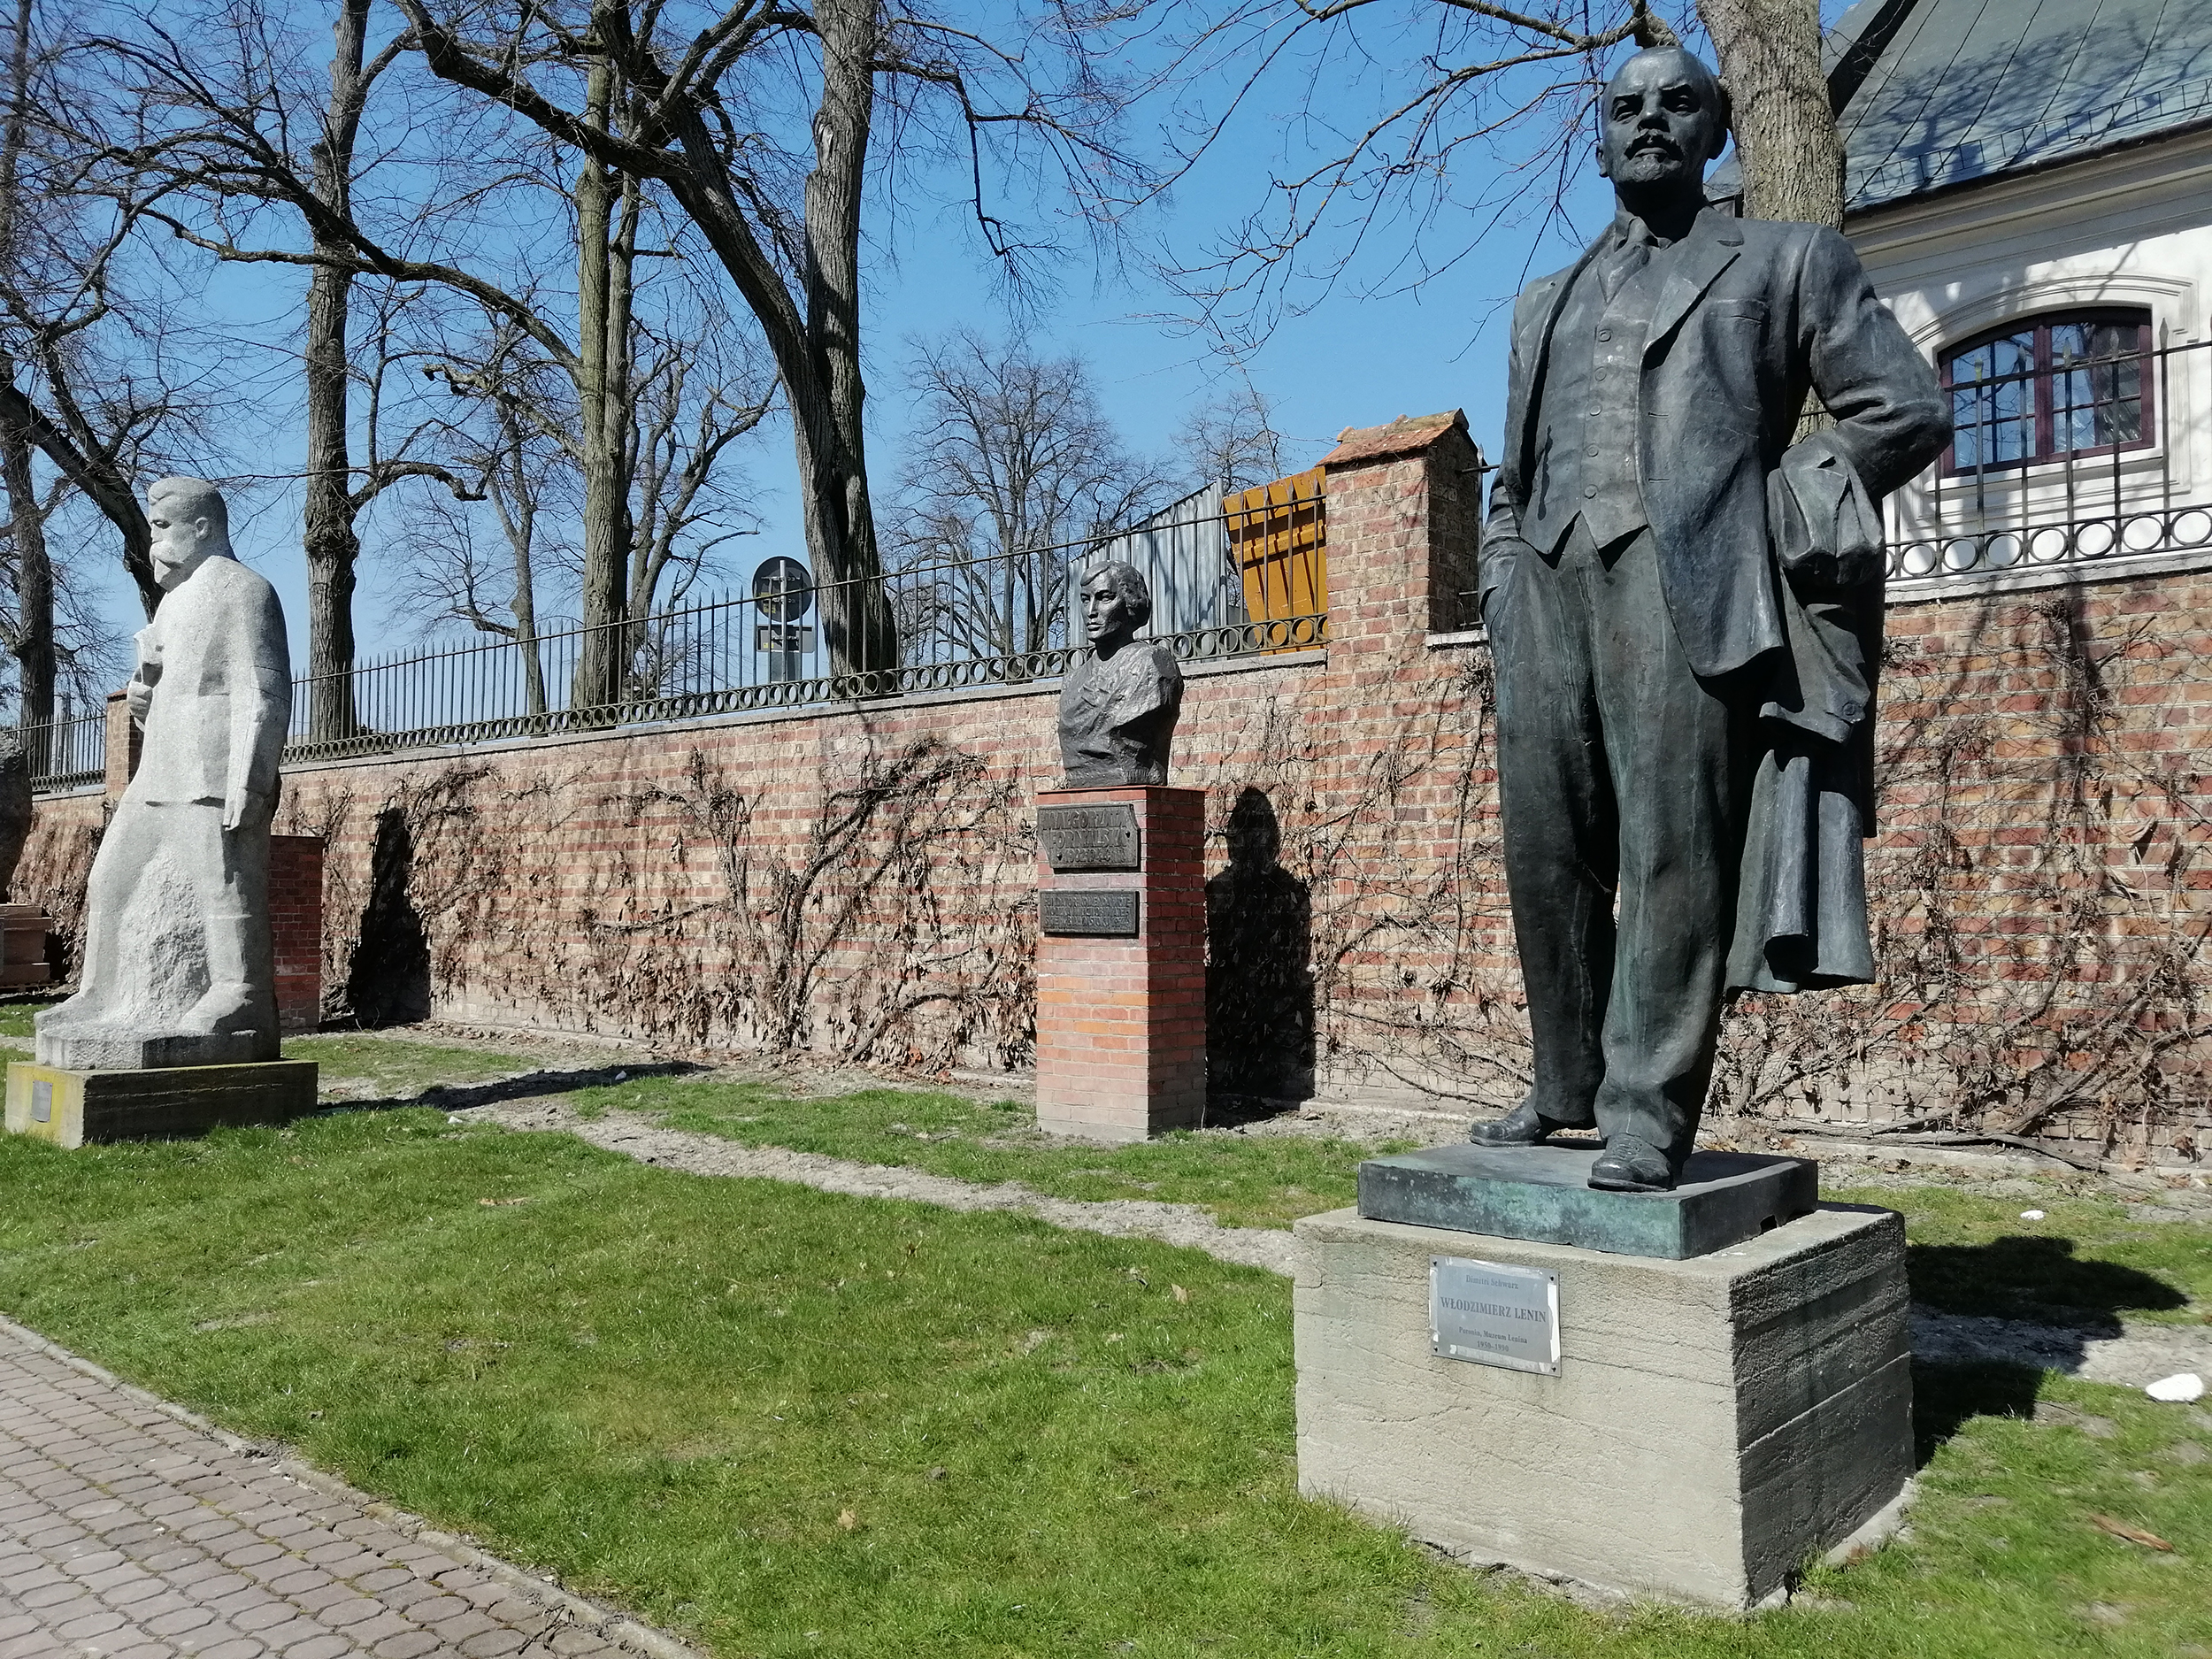 Fotografia. Pomnik Włodzimierza Lenina, postać całościowa. Rzeźba z brązu o wymiarach 260 x 120 x 75 cm ustawiona na betonowym postumencie z metalową tabliczką. Na tabliczce napis: Dimitri Schwarz, Włodzimierz Lenin, Poronin, Muzeum Lenina 1950-1990